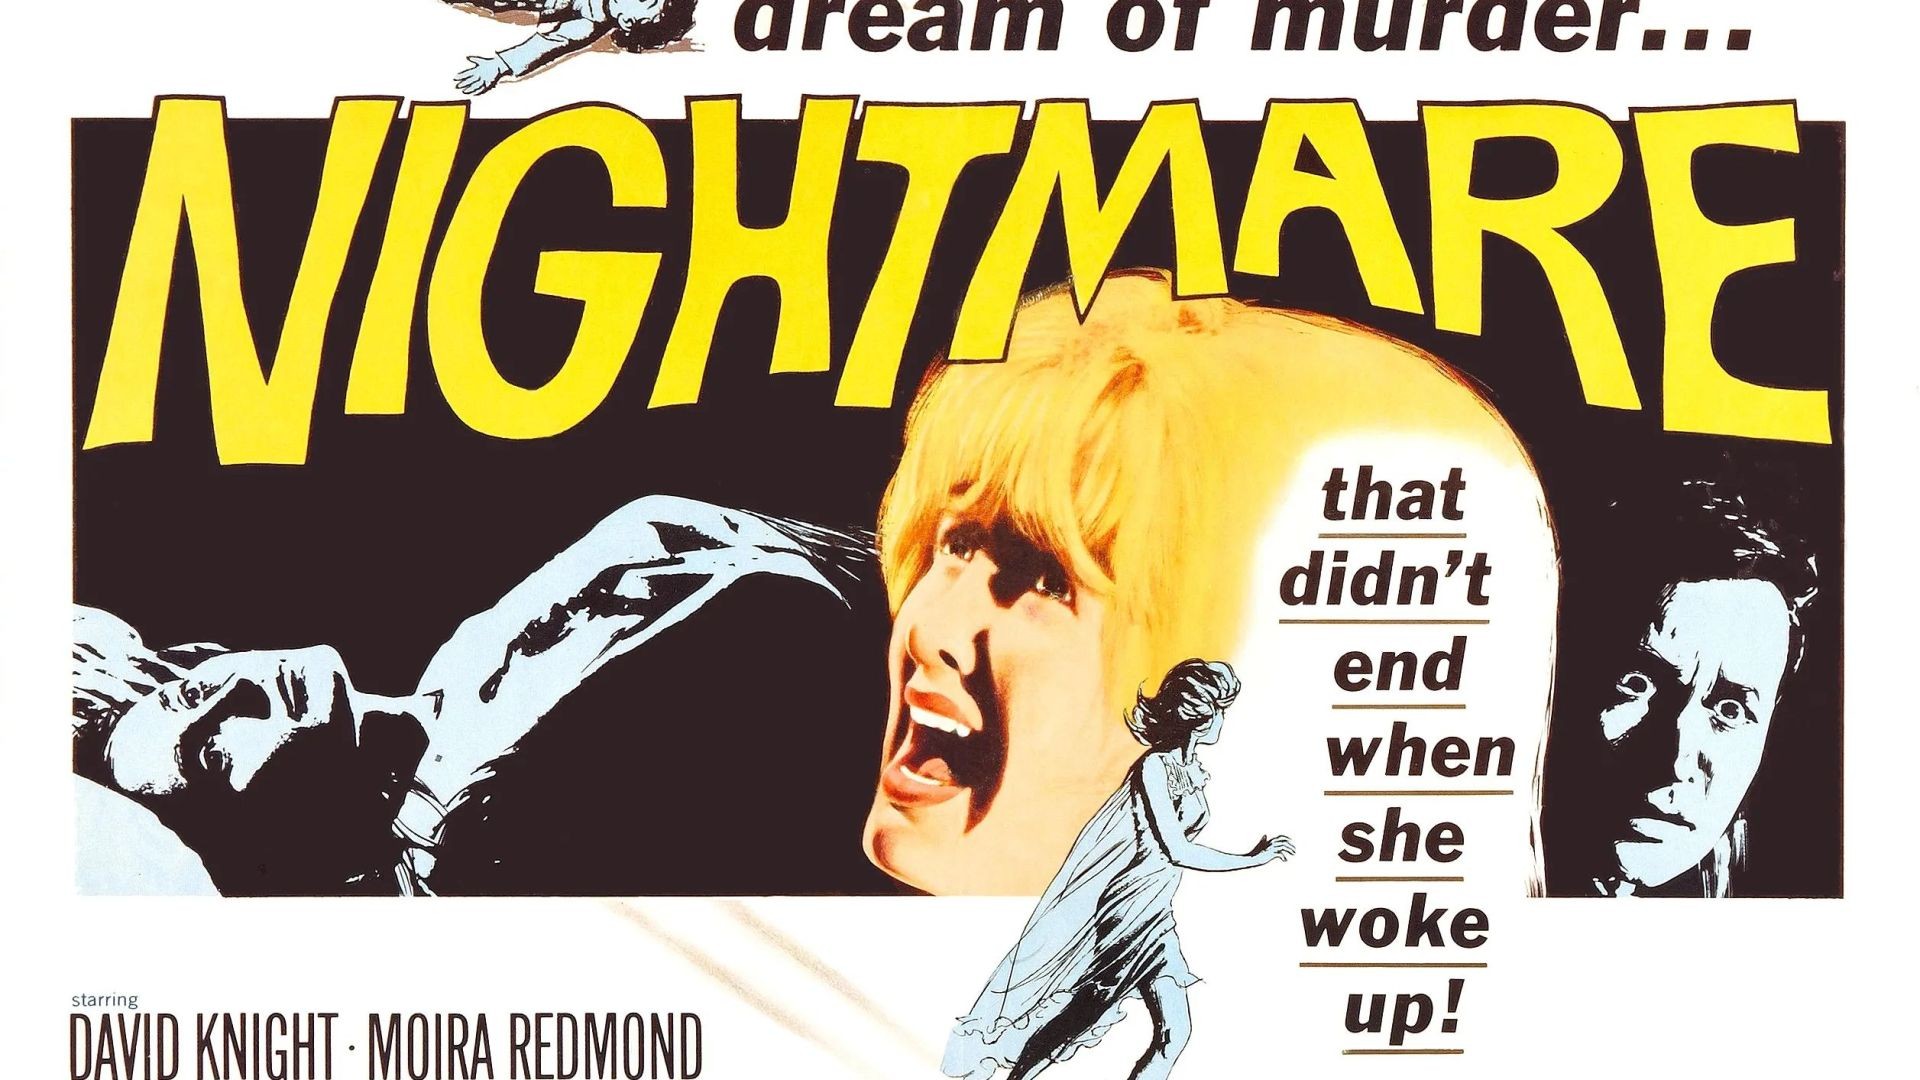 Nightmare (1964) - Hammer Horror